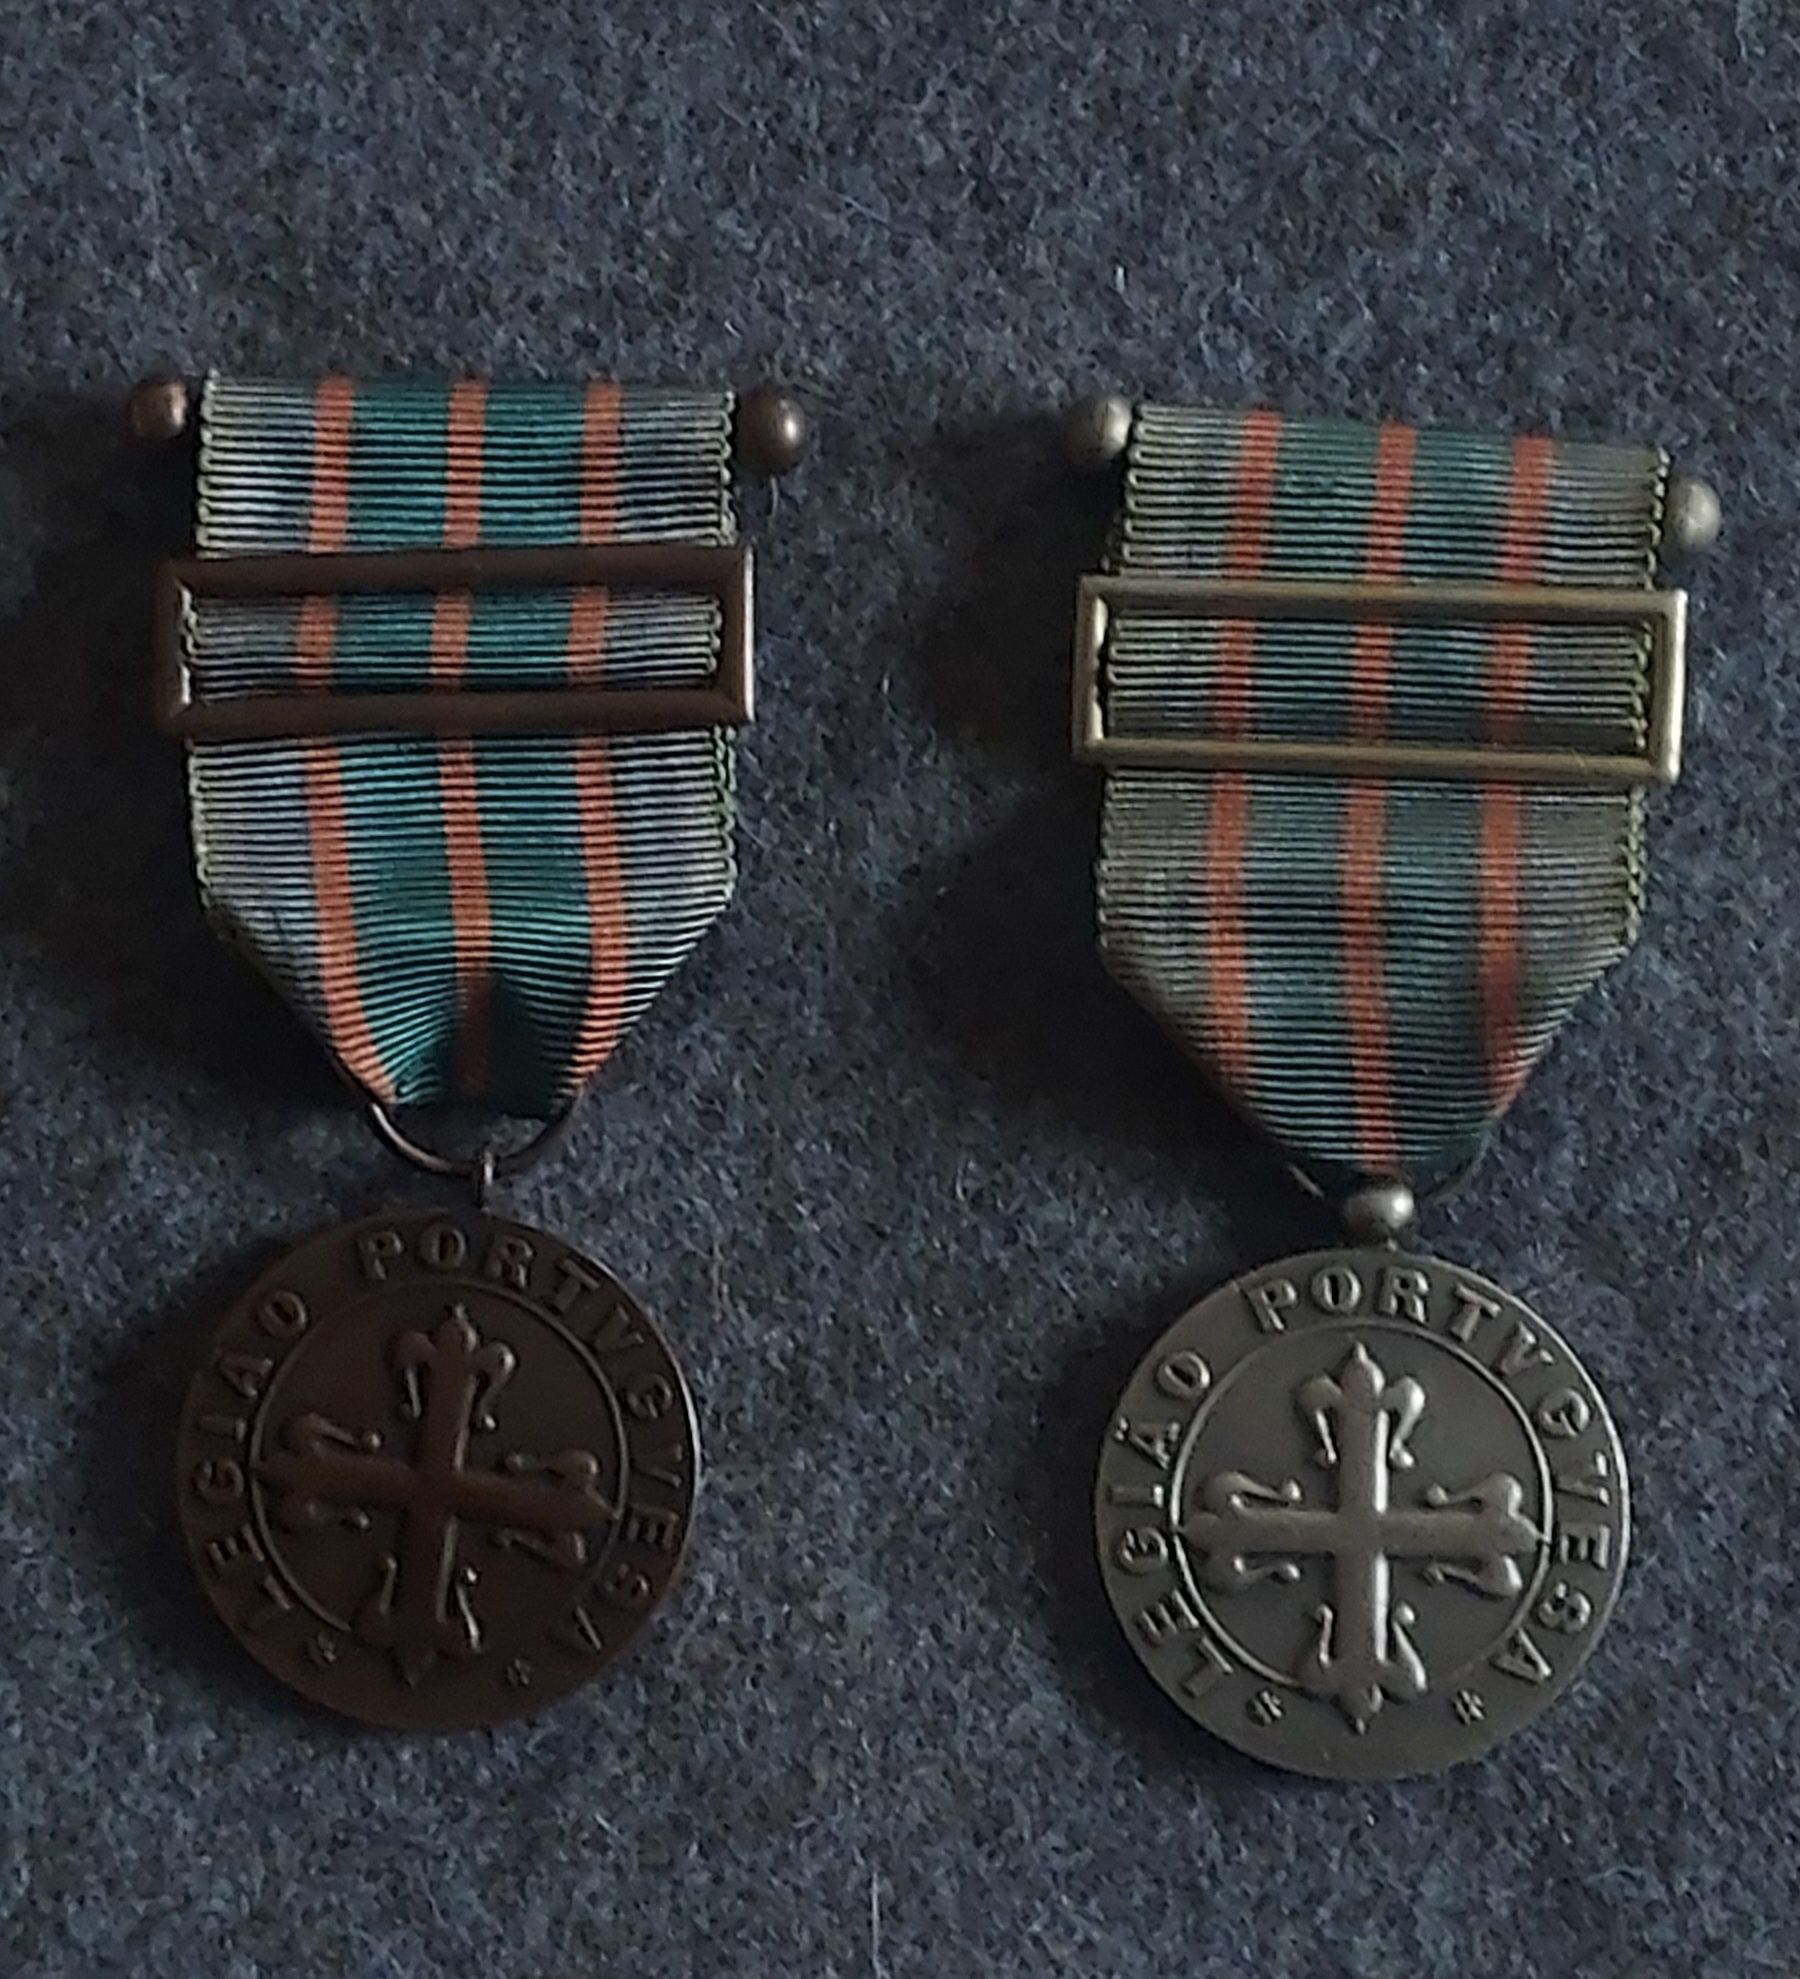 Medalhas de Legião Portuguesa